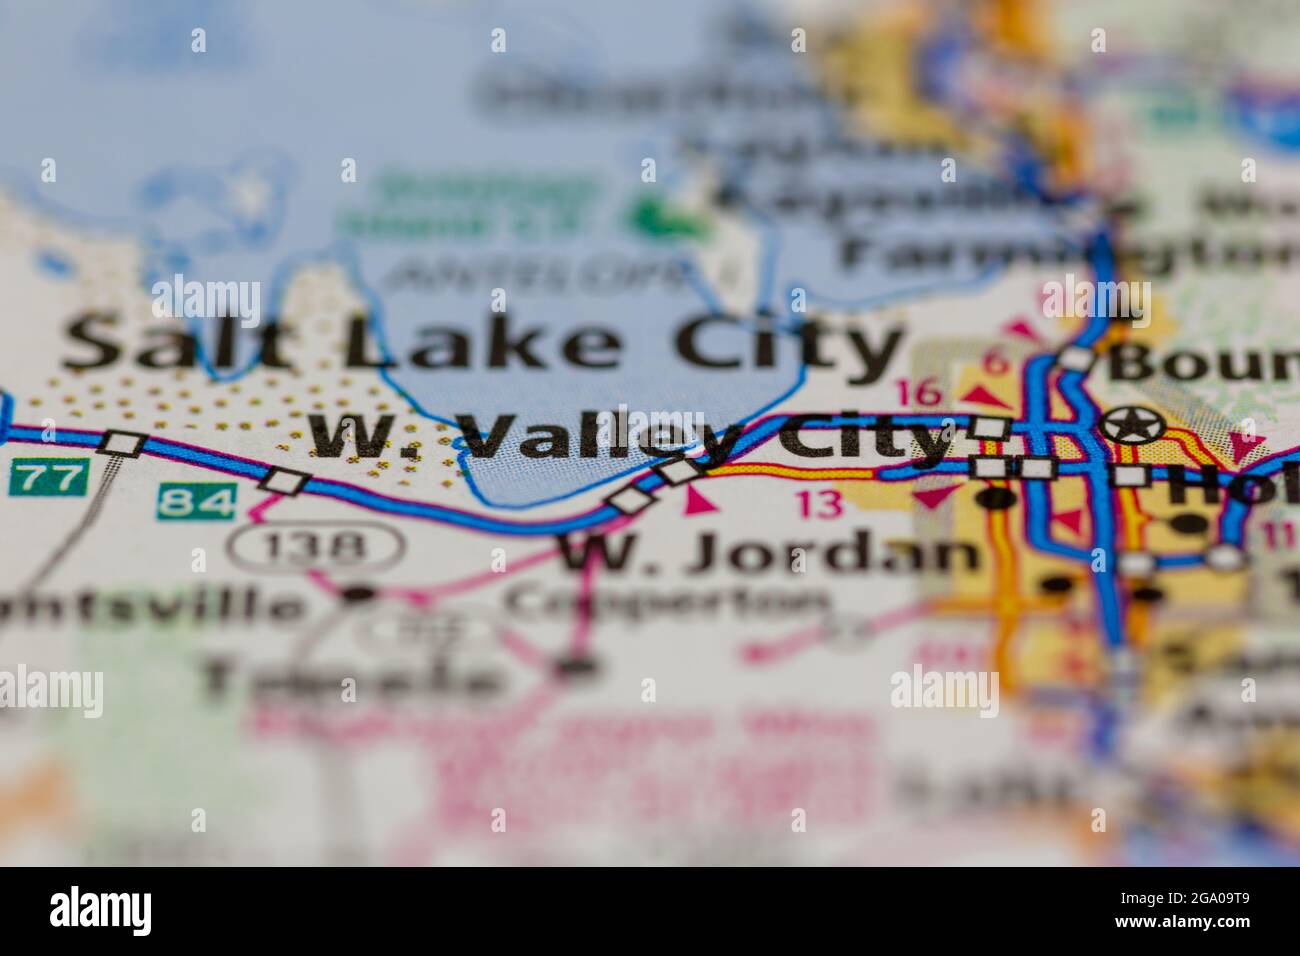 West Valley City Utah USA visualizzata su una mappa stradale o su una mappa geografica Foto Stock